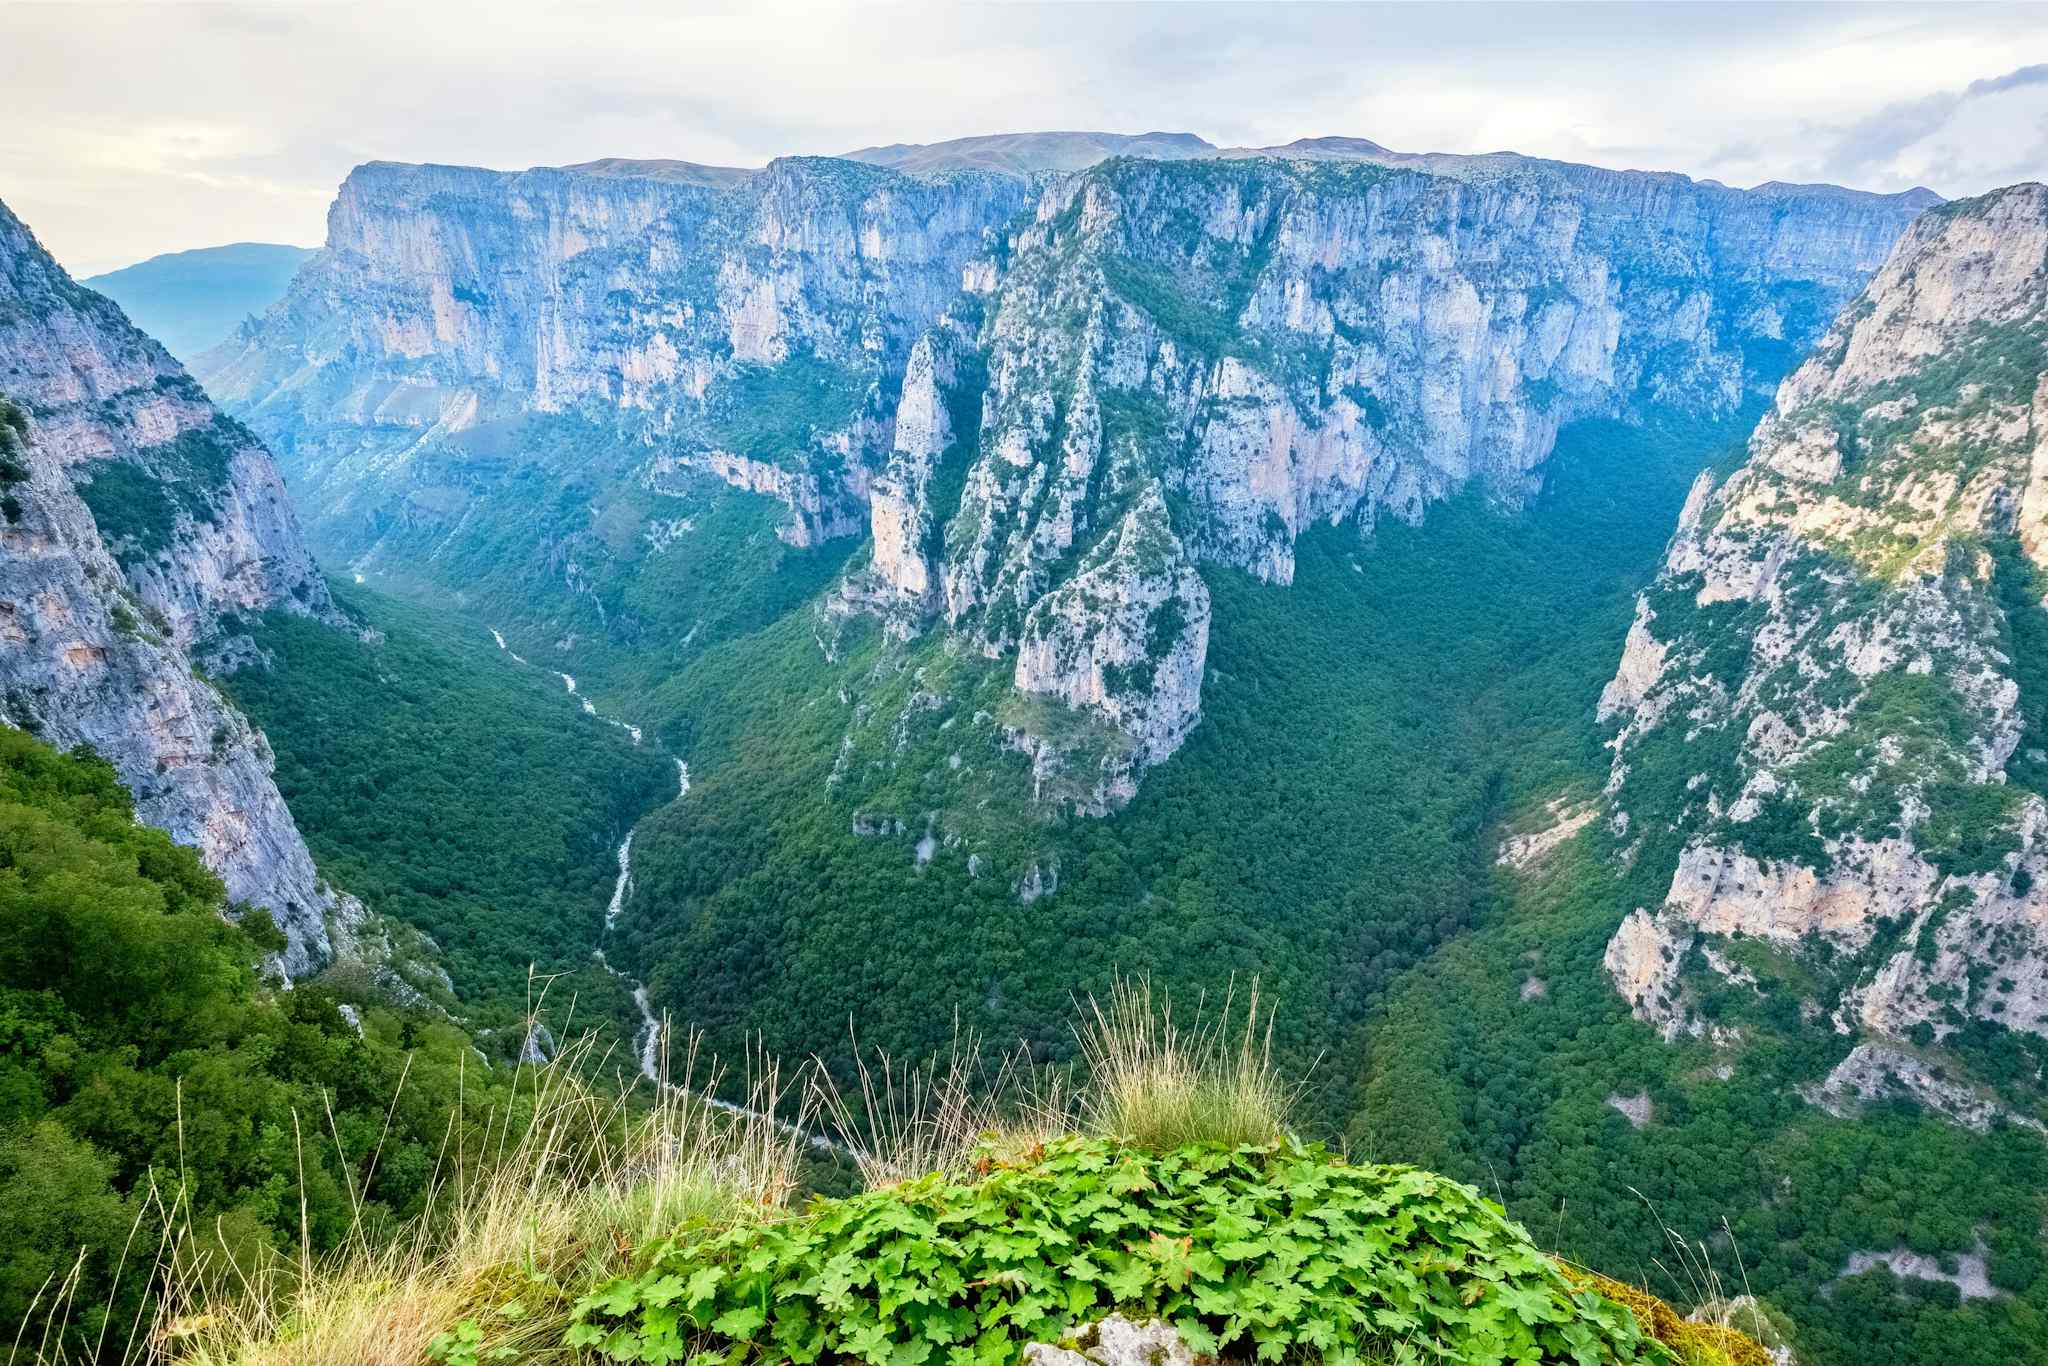 Vikos Gorge, Greece. Photo: Canva image - https://www.canva.com/photos/MAD55AO_16M-vikos-gorge-zagoria-greece/